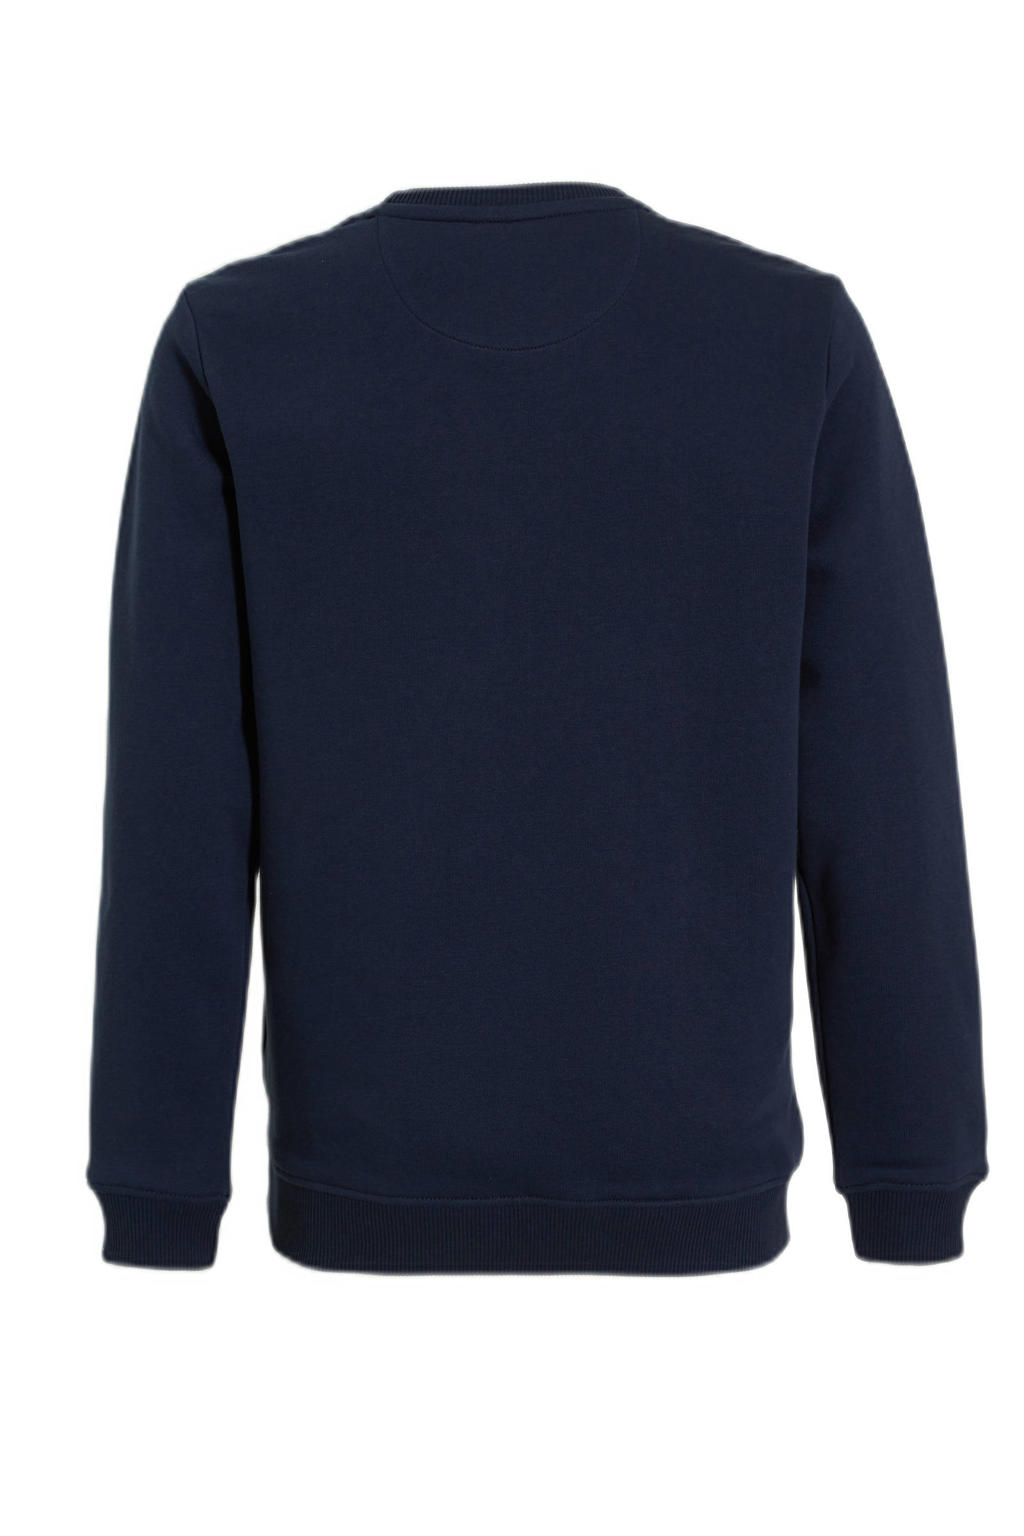 Cars sweater HARVEY met tekst donkerblauw | kleertjes.com